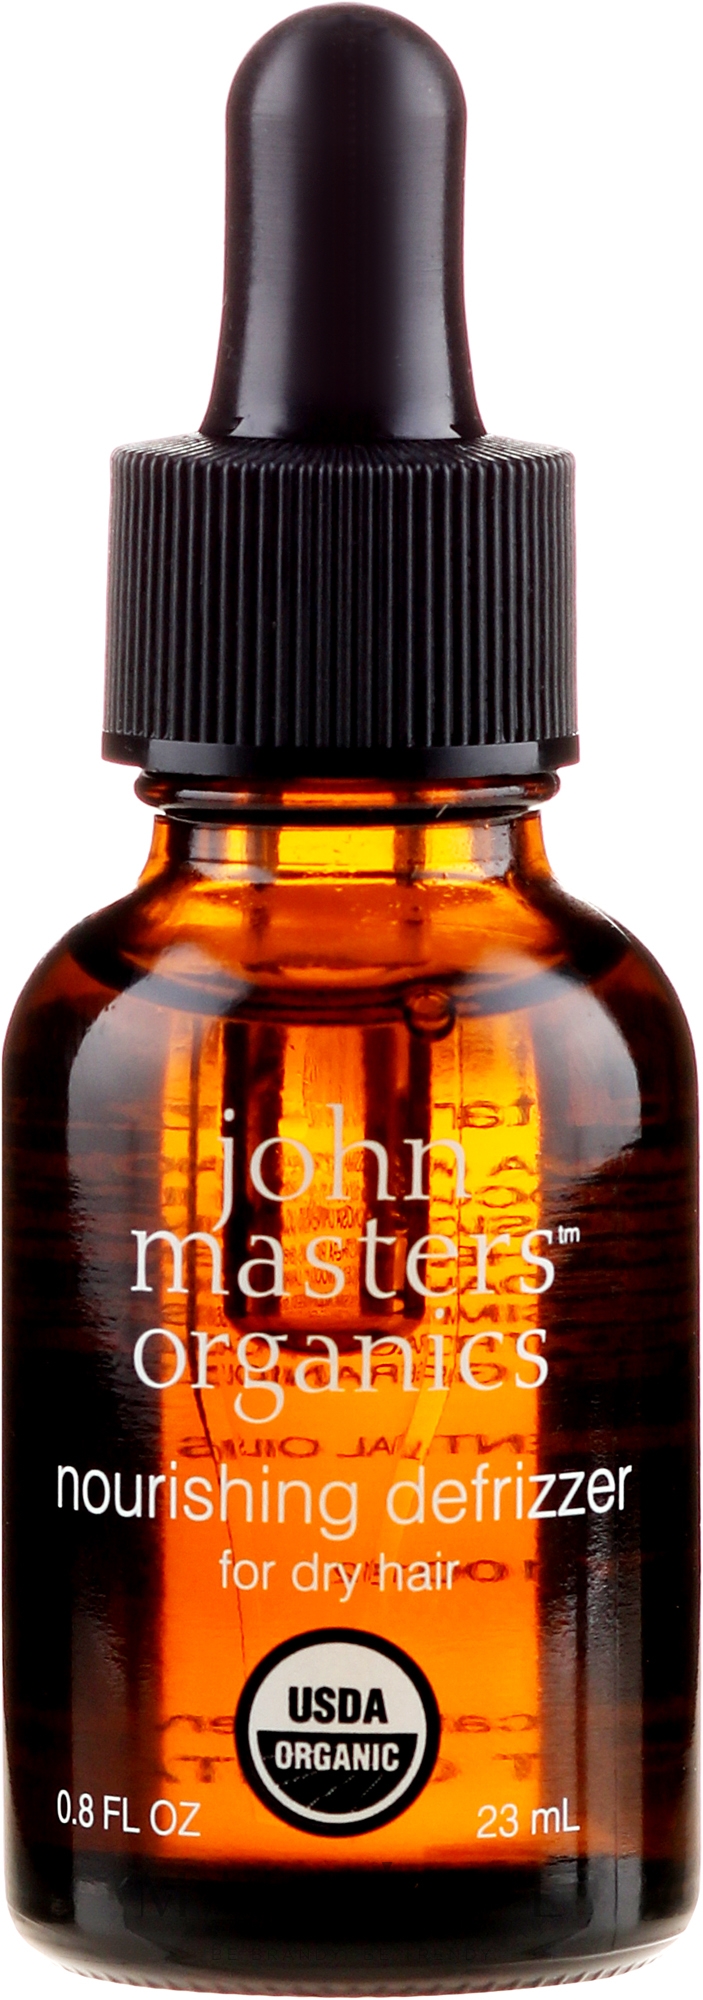 wzmacniający olejek do włosów john masters organics